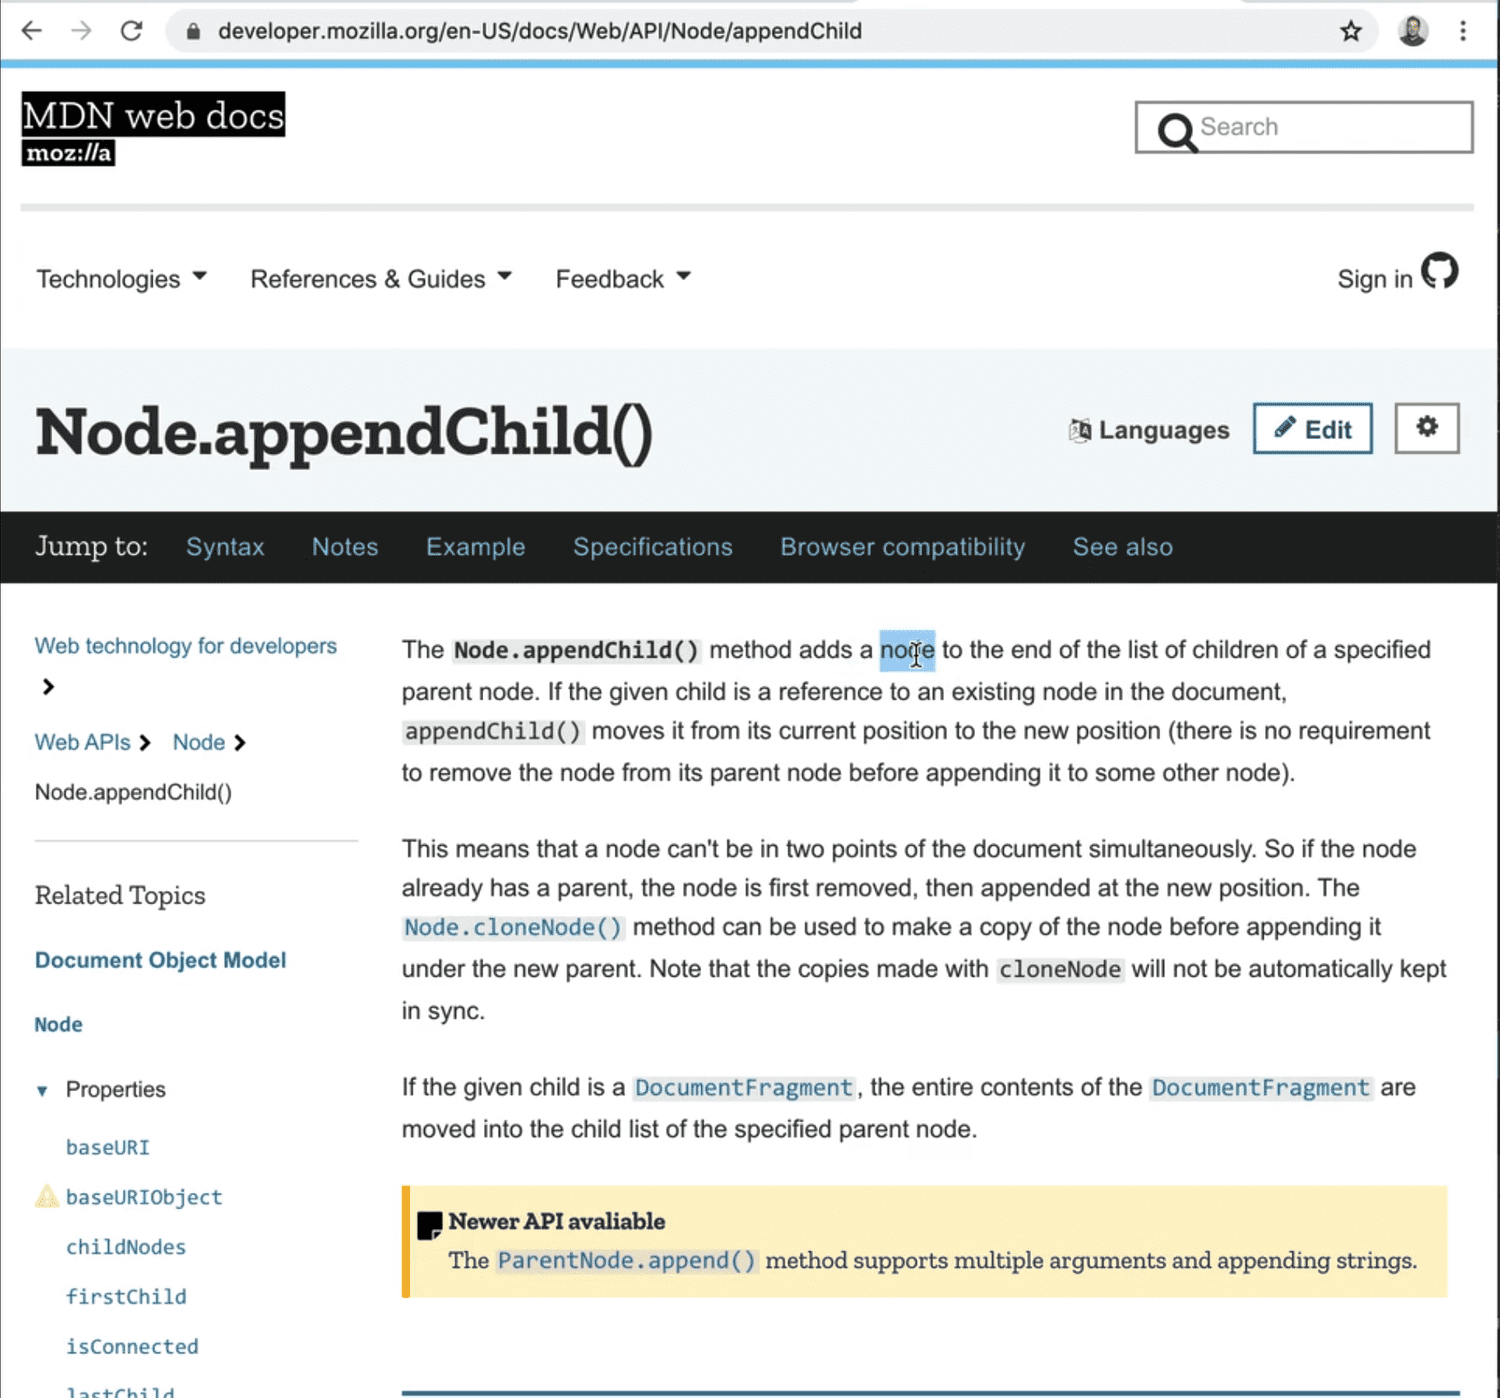 the node.appendChild MDN web docs page